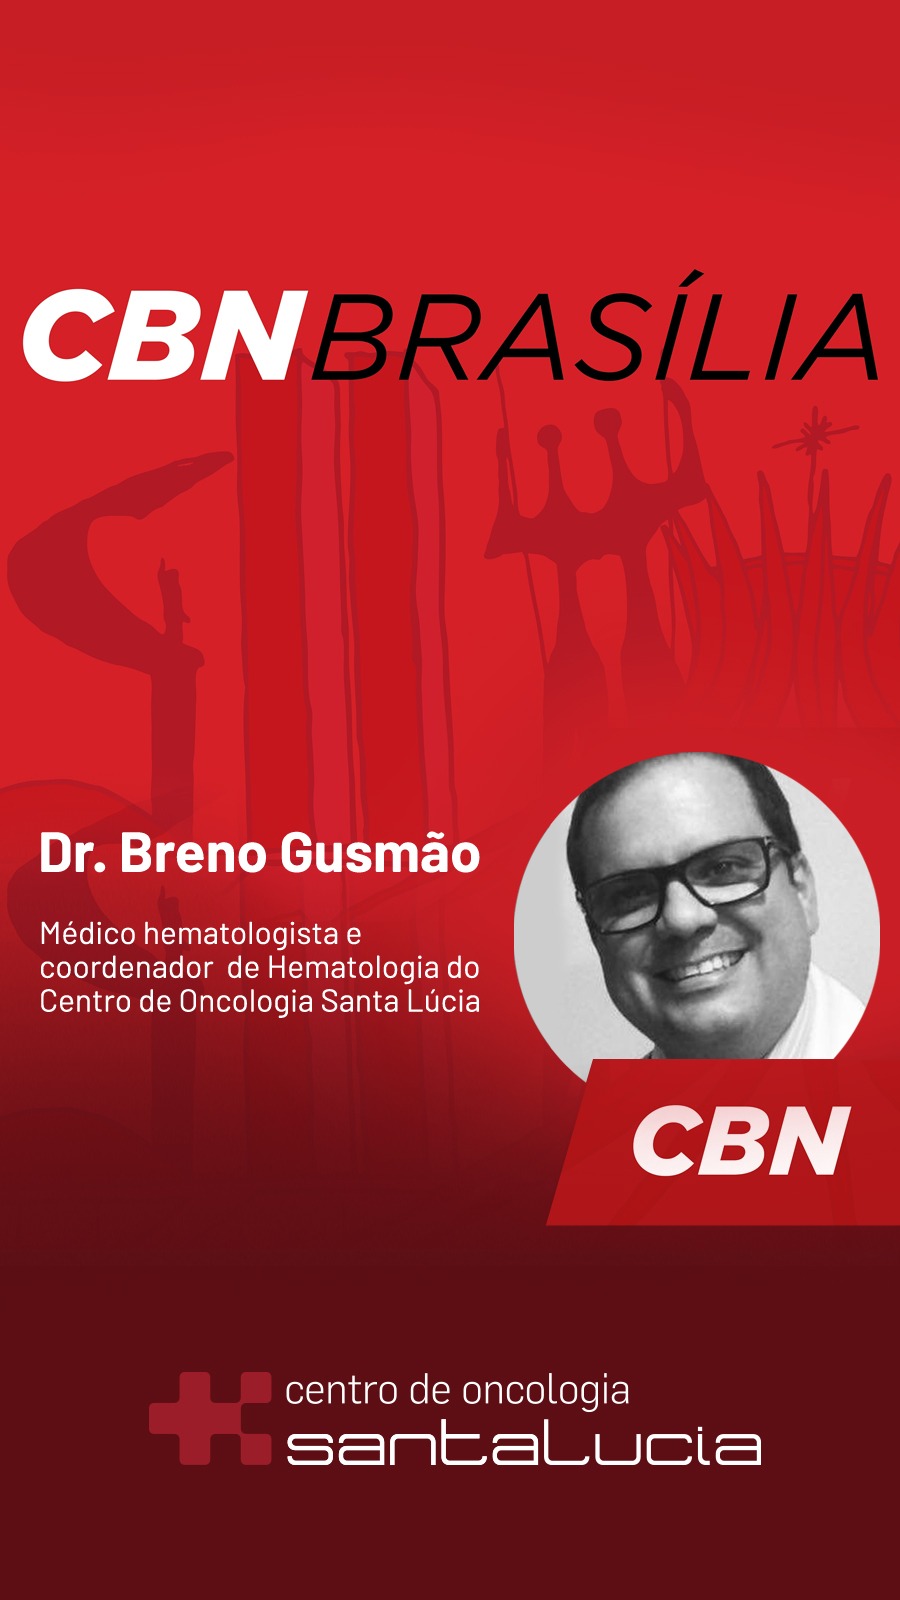 Rádio CBN Brasília - Dr. Breno Gusmão HSLS - 04-10-2018